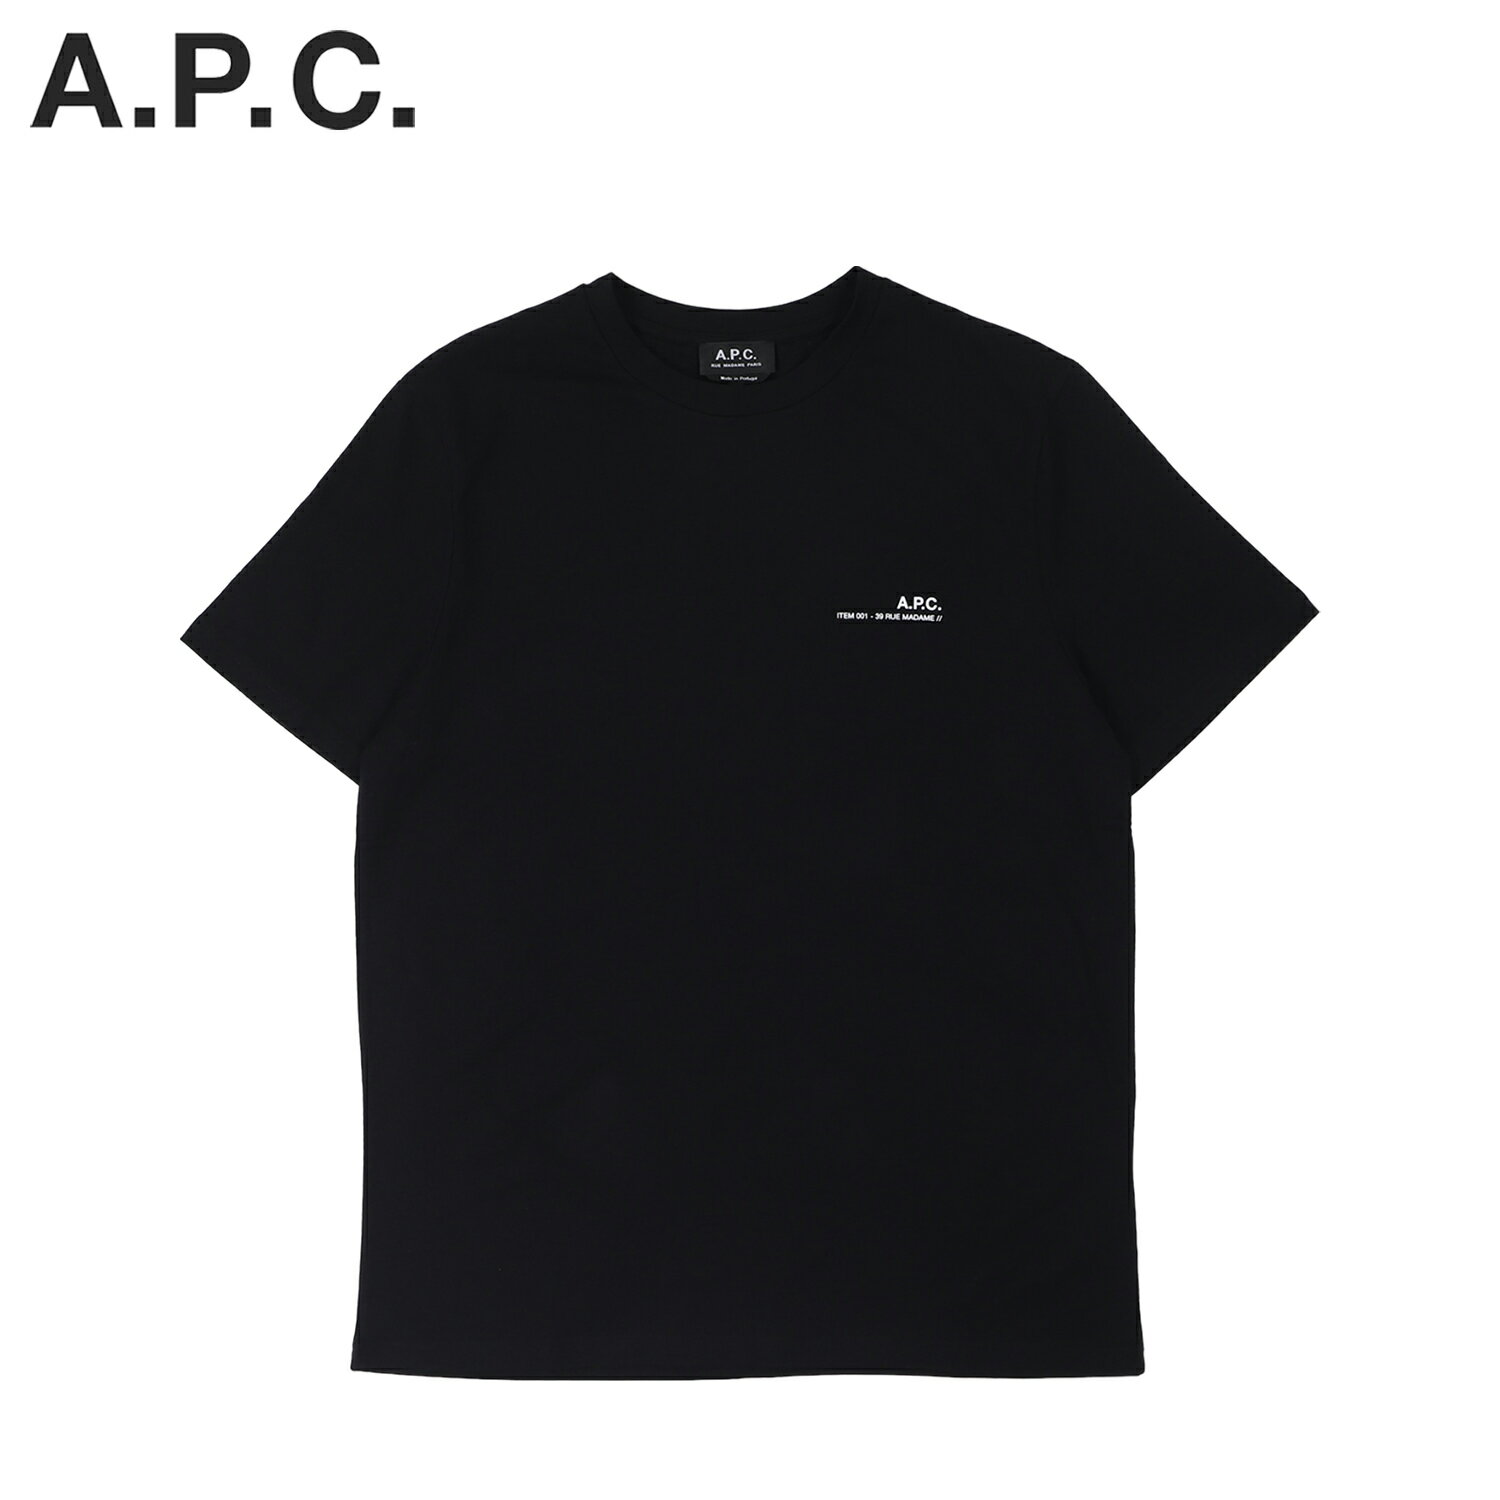 A.P.C. アーペーセー Tシャツ 半袖 メンズ ITEM ブラック 黒